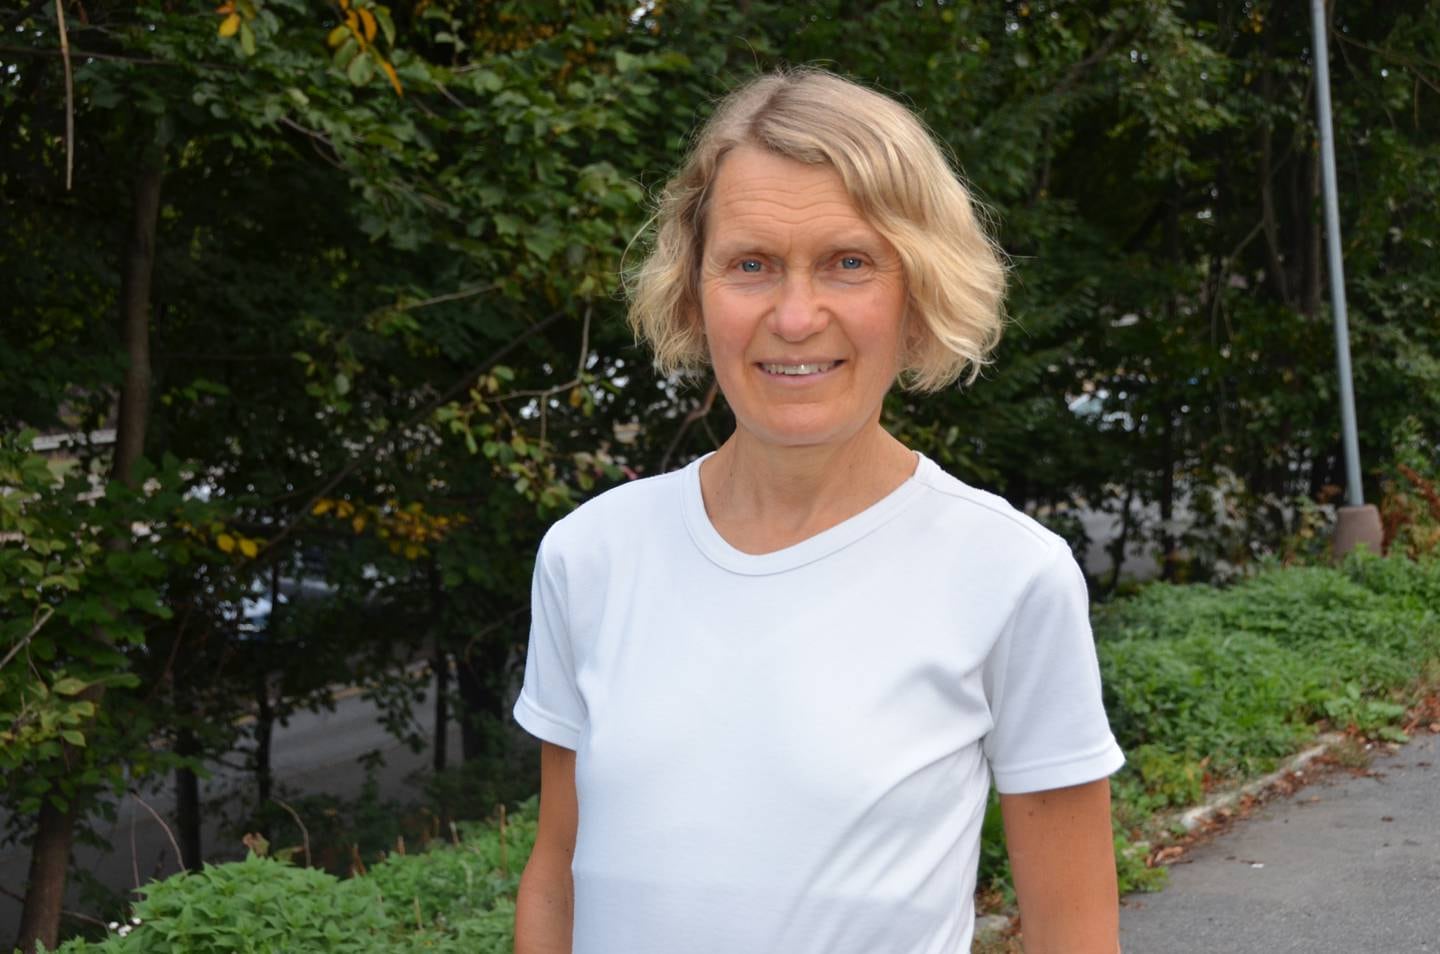 Mette Svendsen, klinisk ernæringsfysiolog, PhD. ved Oslo universitetssykehus og 1. lektor ved Universitetet i Oslo. Leder i Norsk forening for fedmeforskning.